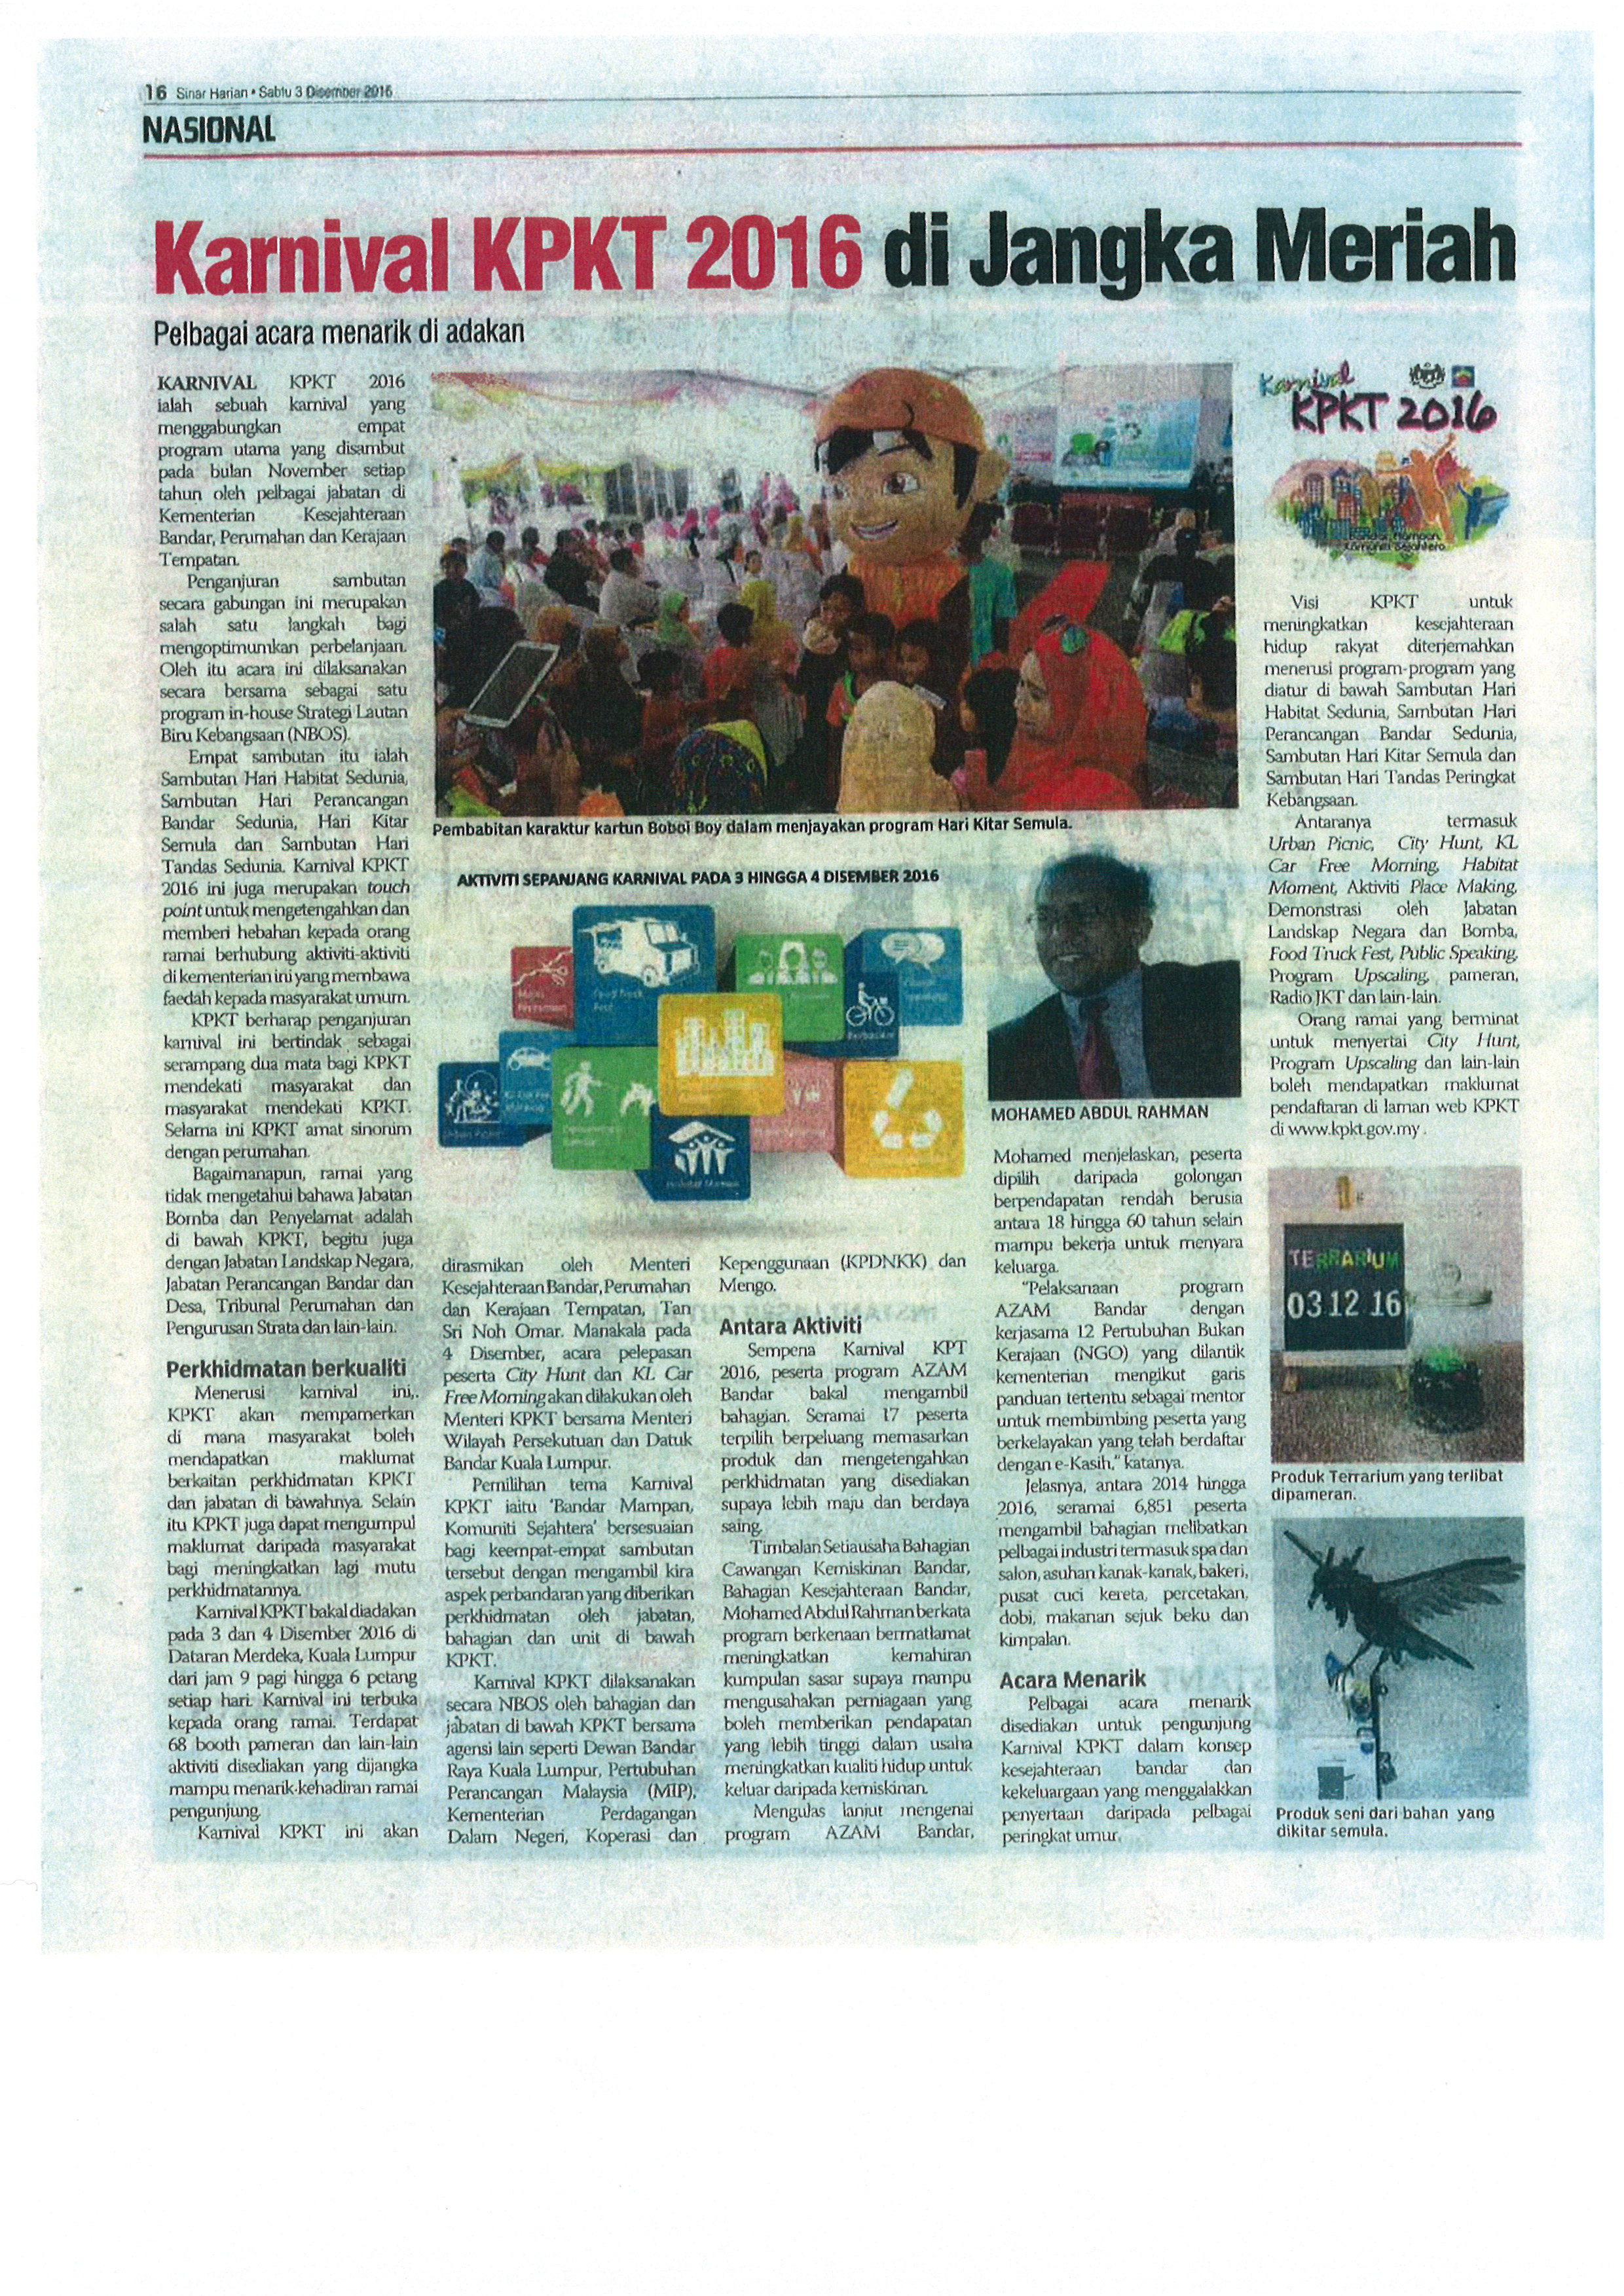 Karnival KPKT 2016 di Jangka Meriah (HPBS)